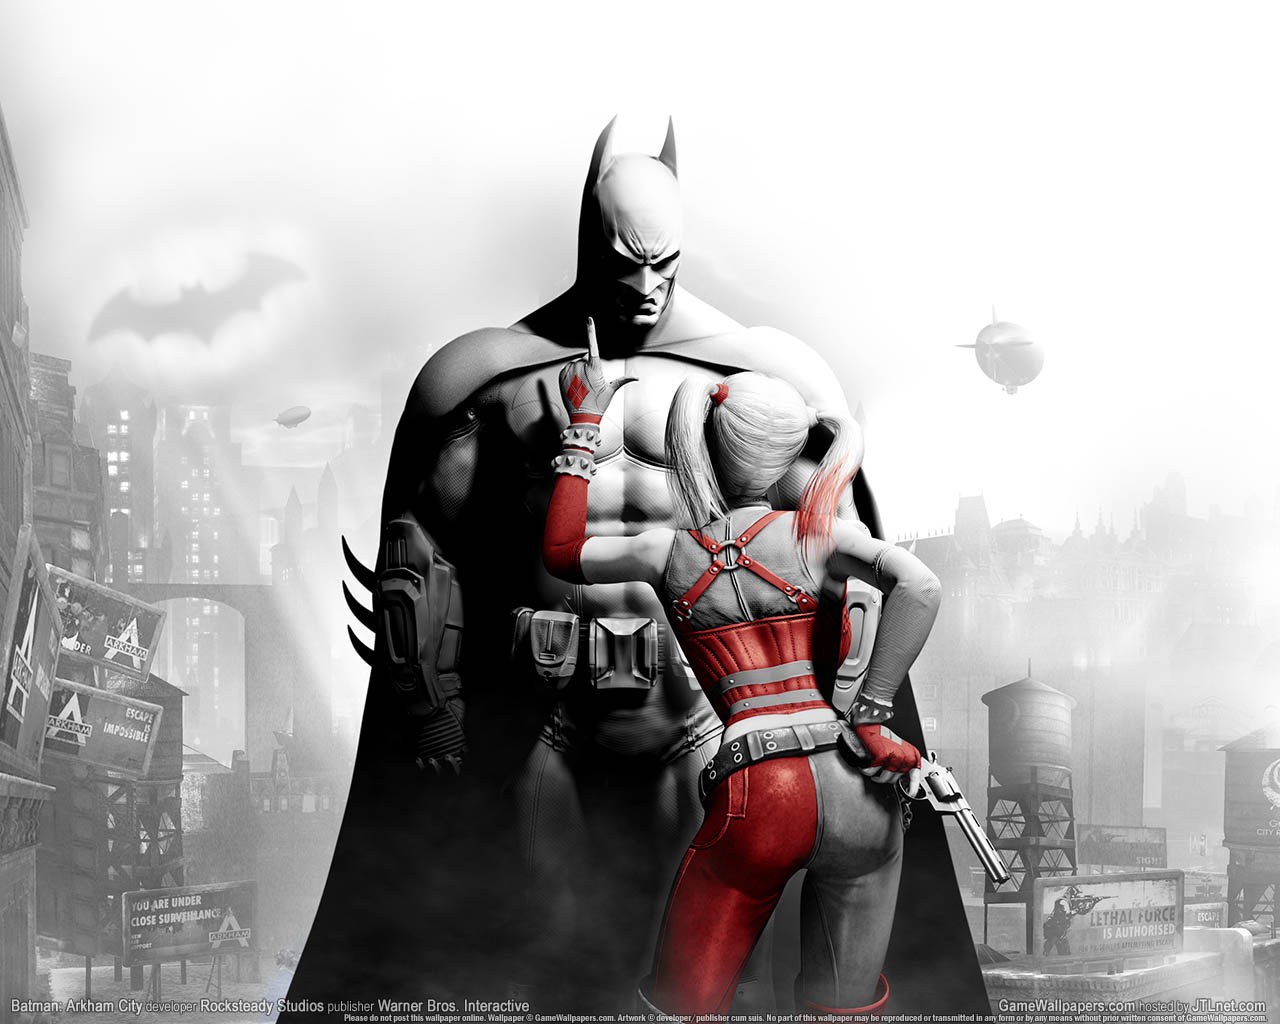 Batman: Arkham City fond d'cran 01 1280x1024